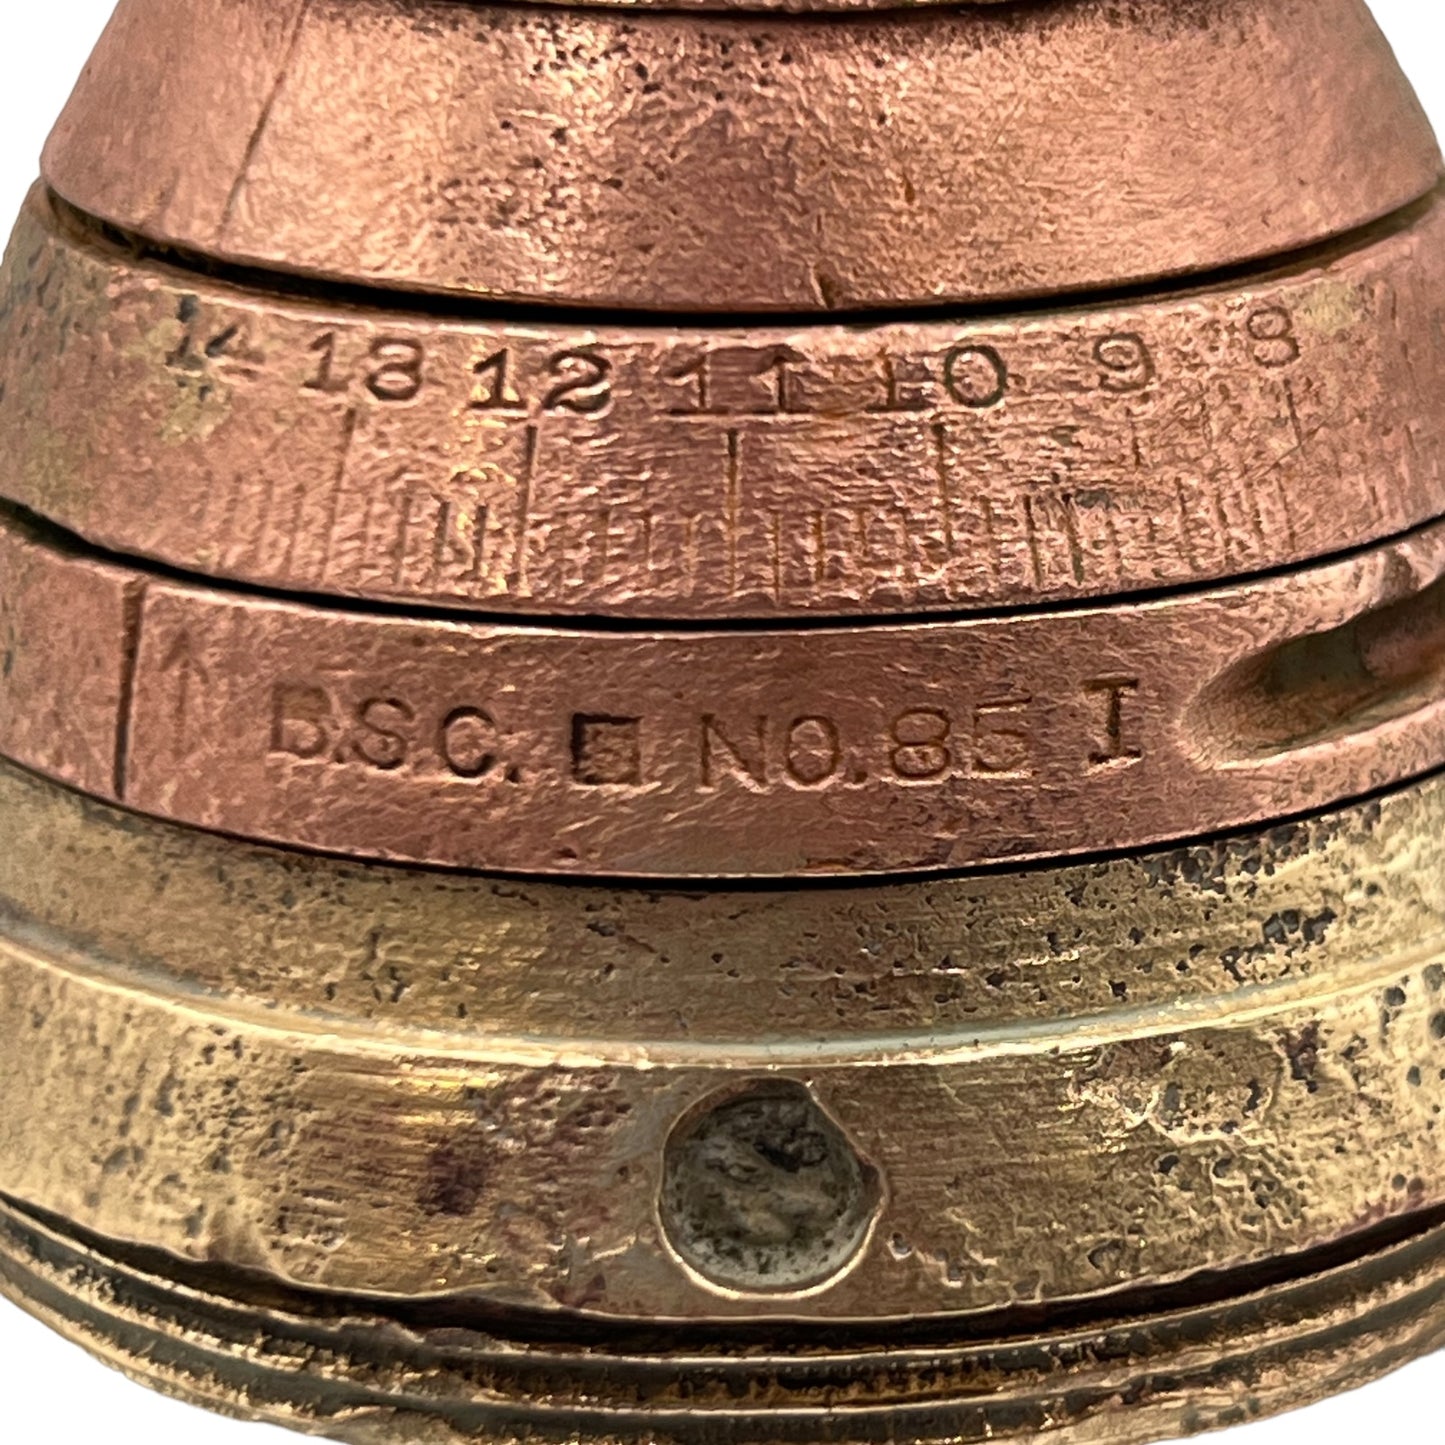 WW1 militaria relic memorabilia brass fuse